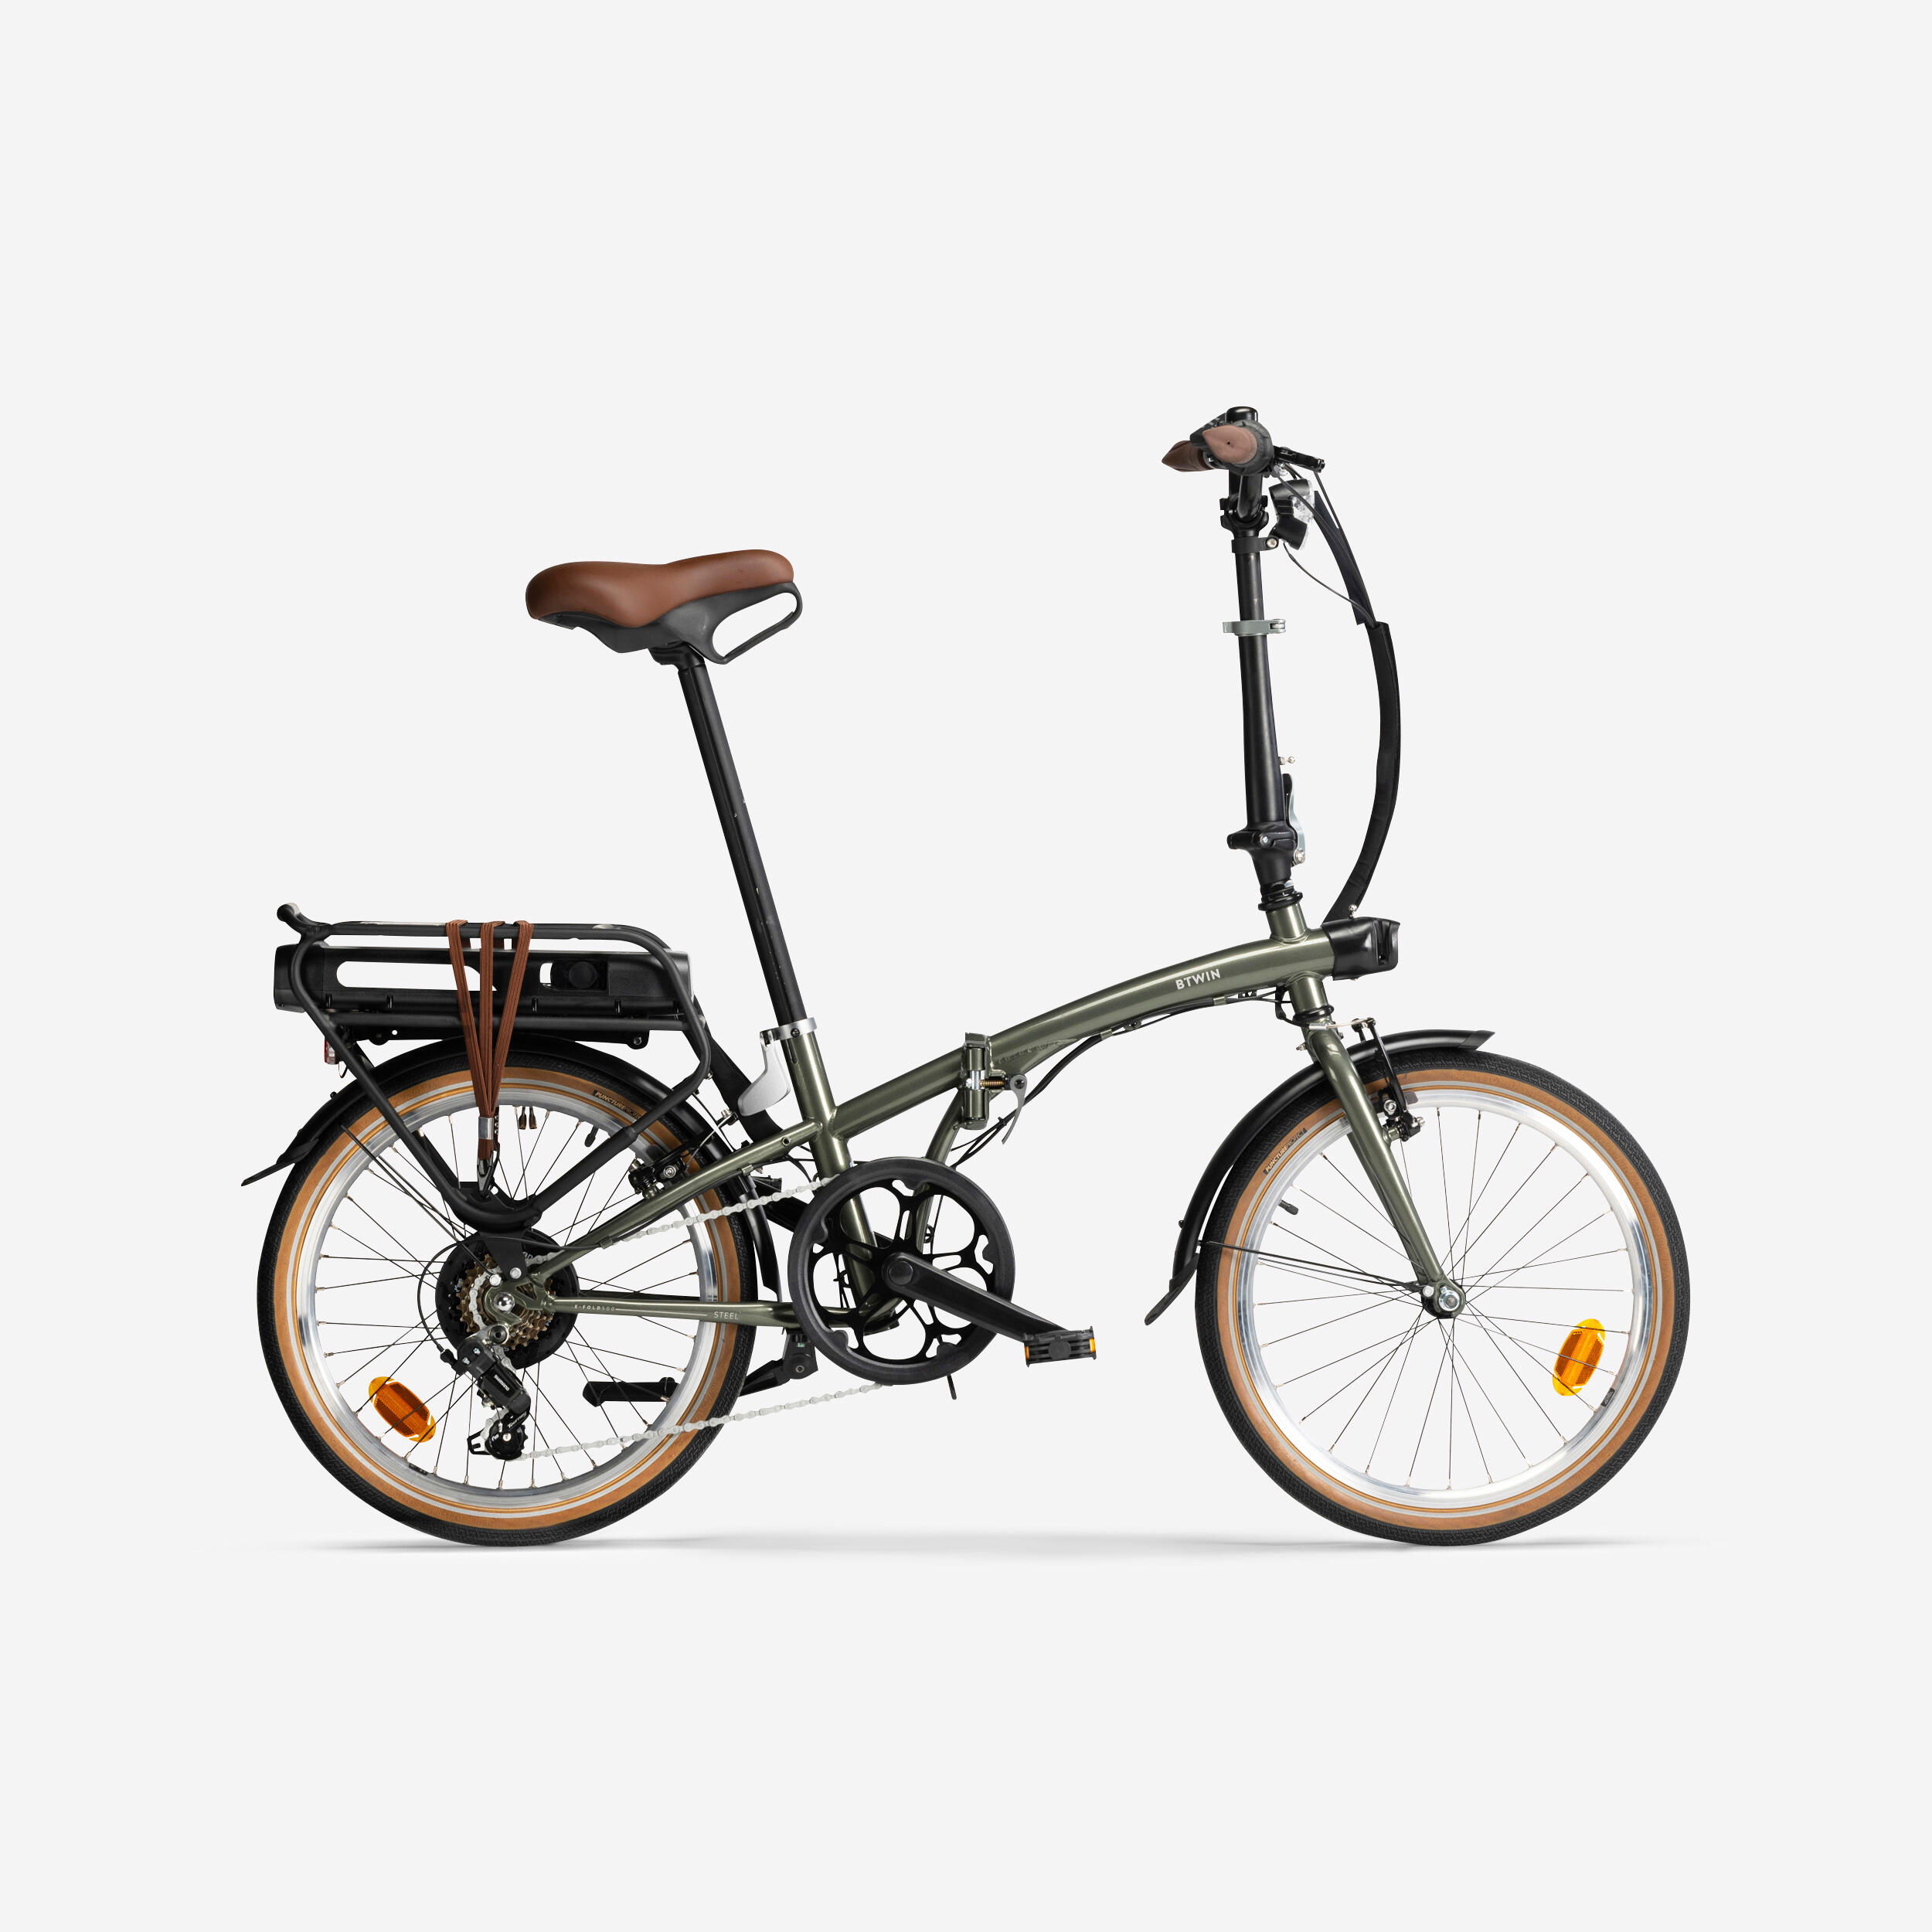 Bicicletă electrică pliabilă E FOLD 500 Verde La Oferta Online BTWIN imagine La Oferta Online